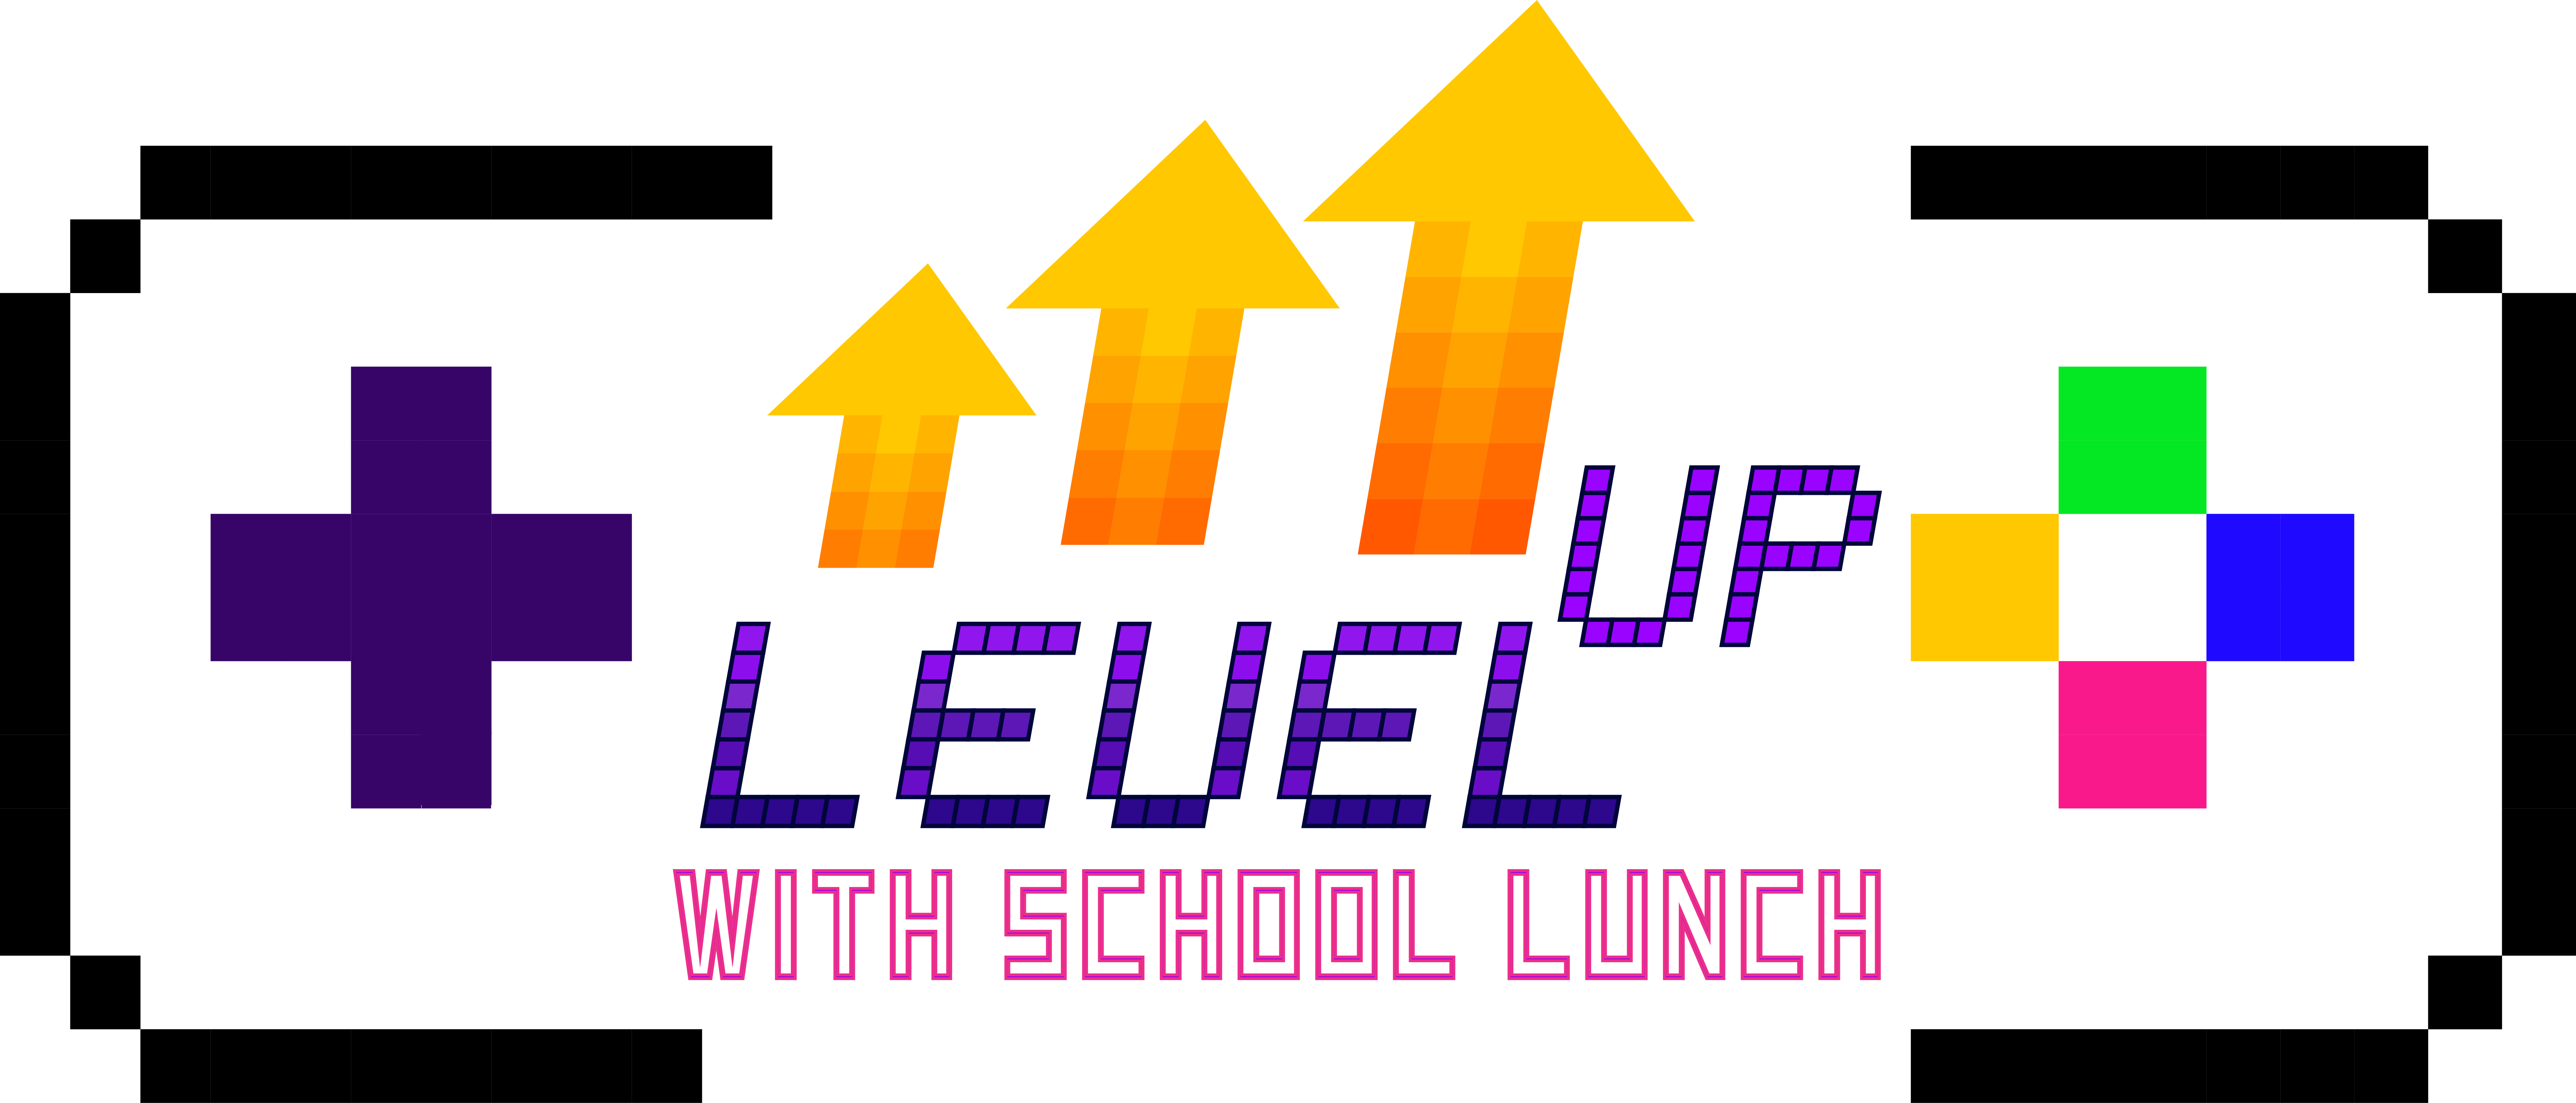 School Lunch Week